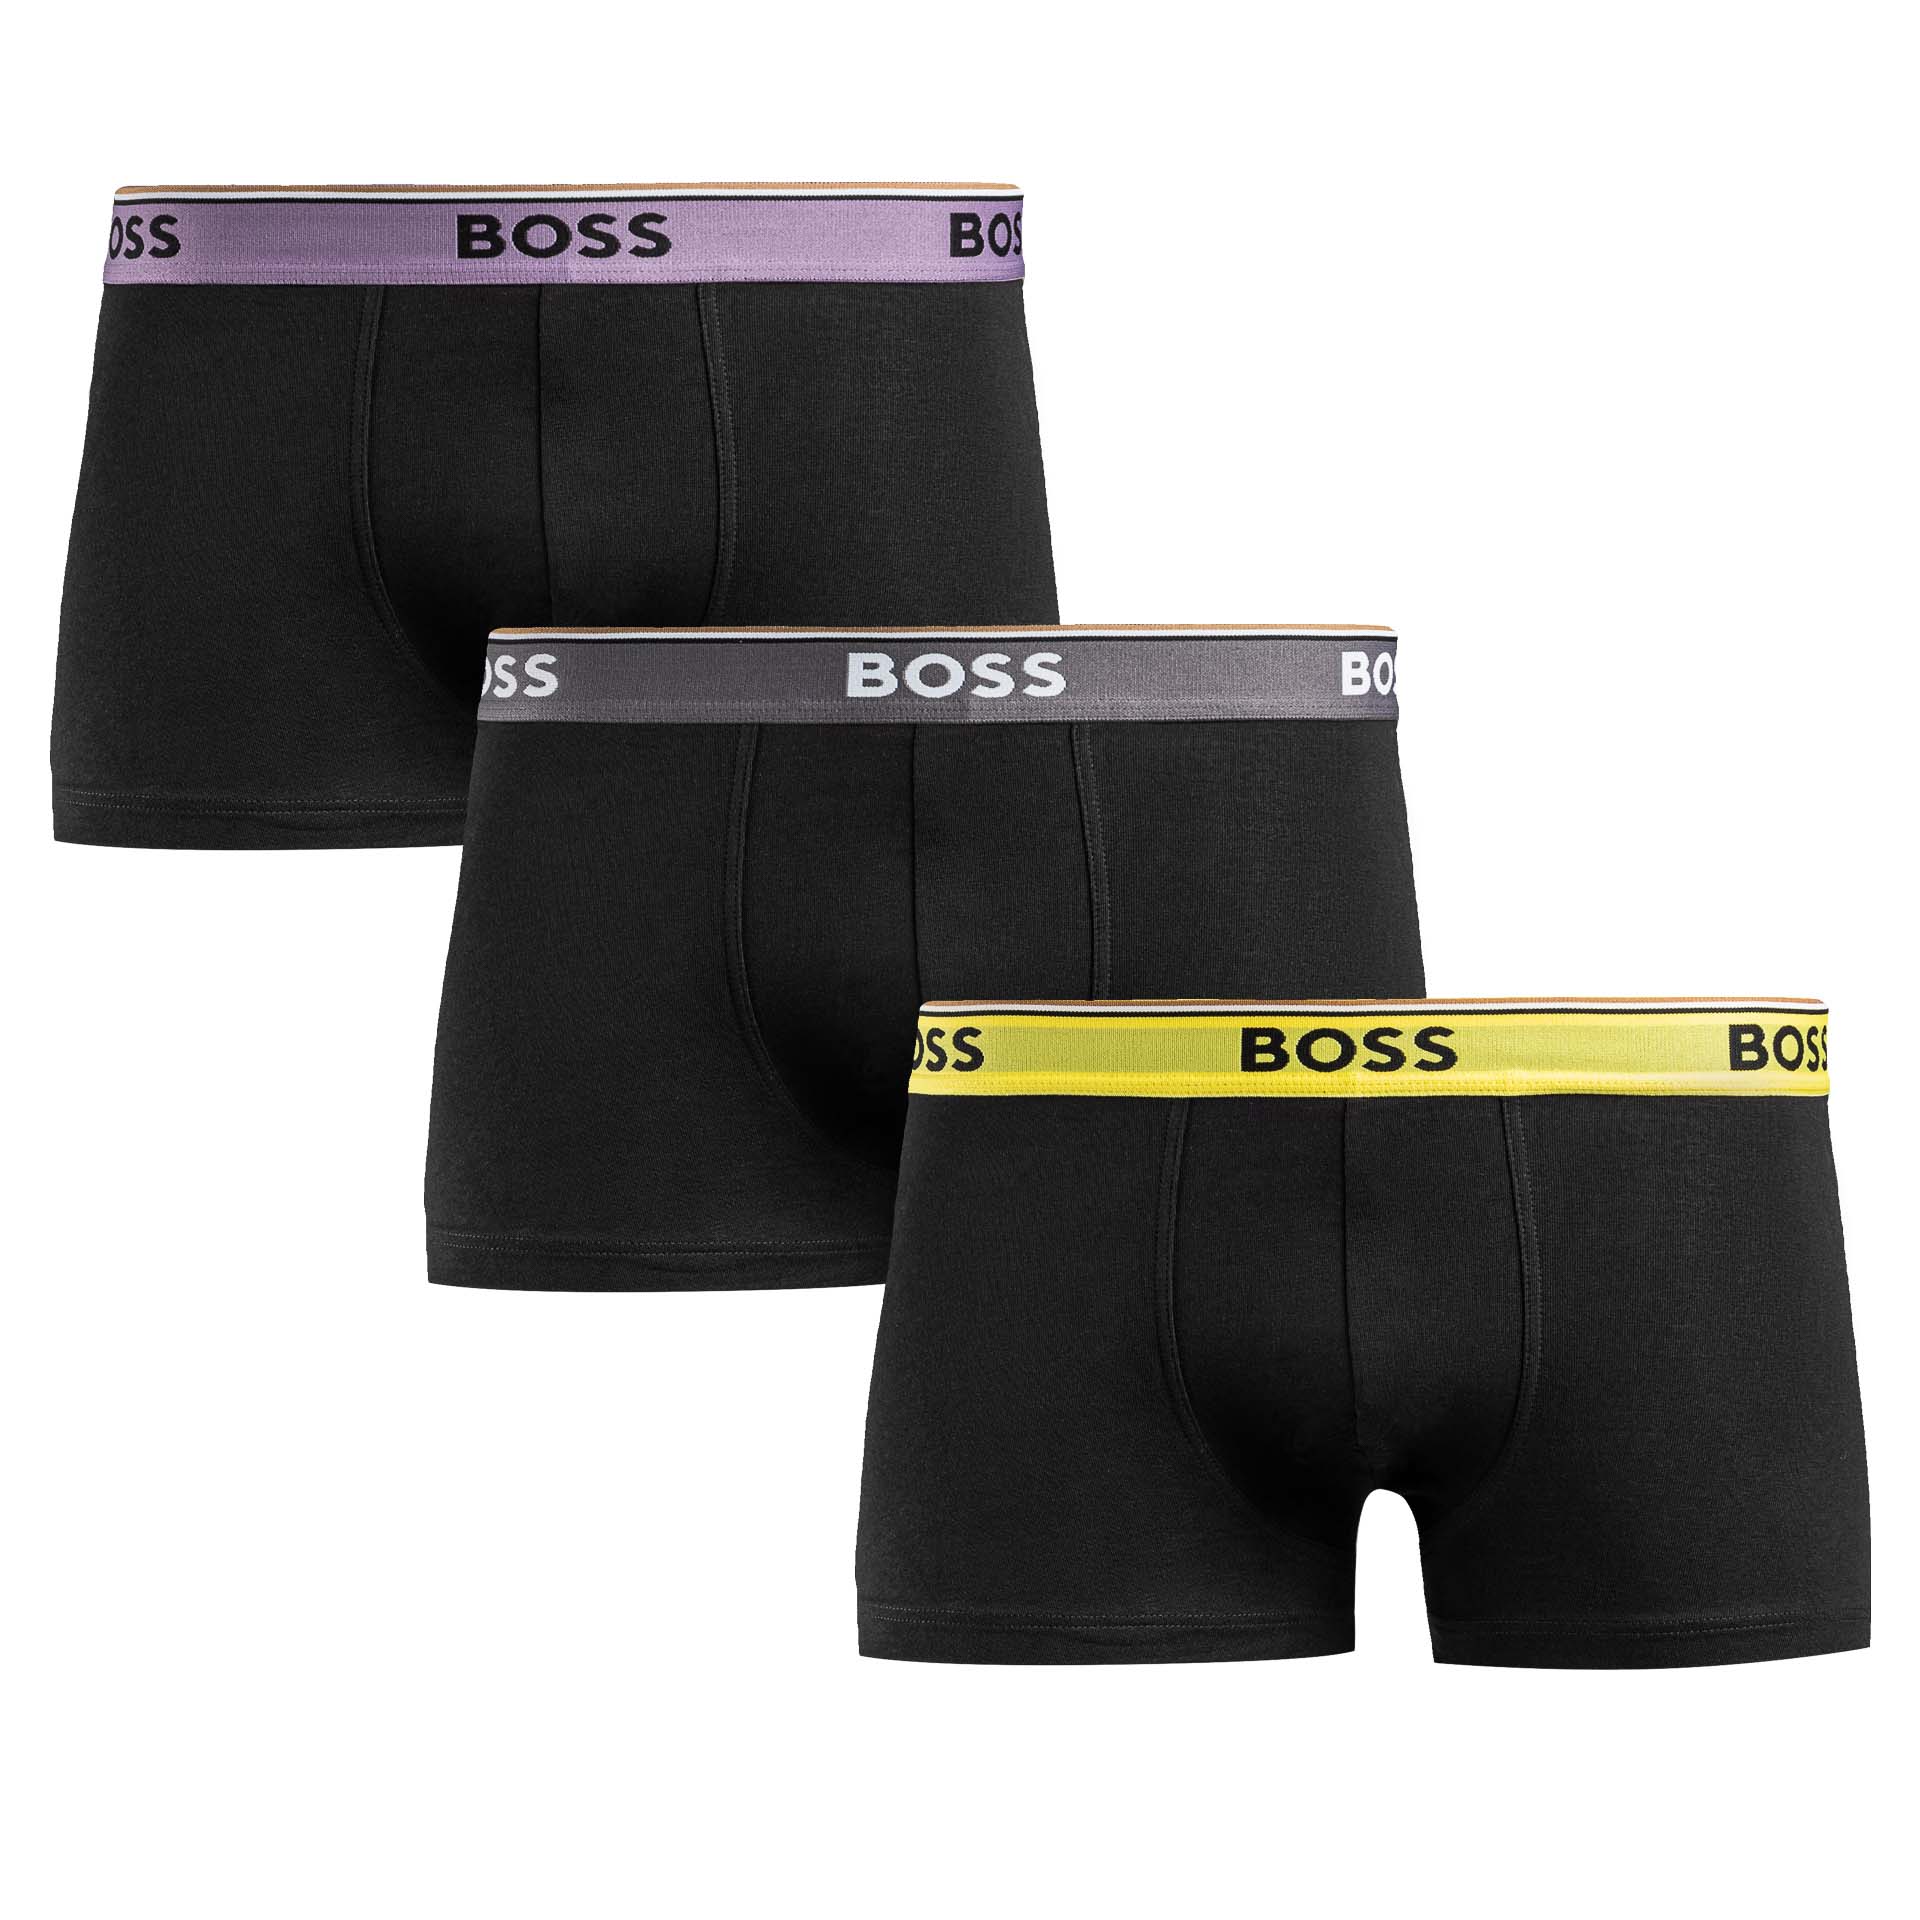 Bokserki męskie Boss 3pack